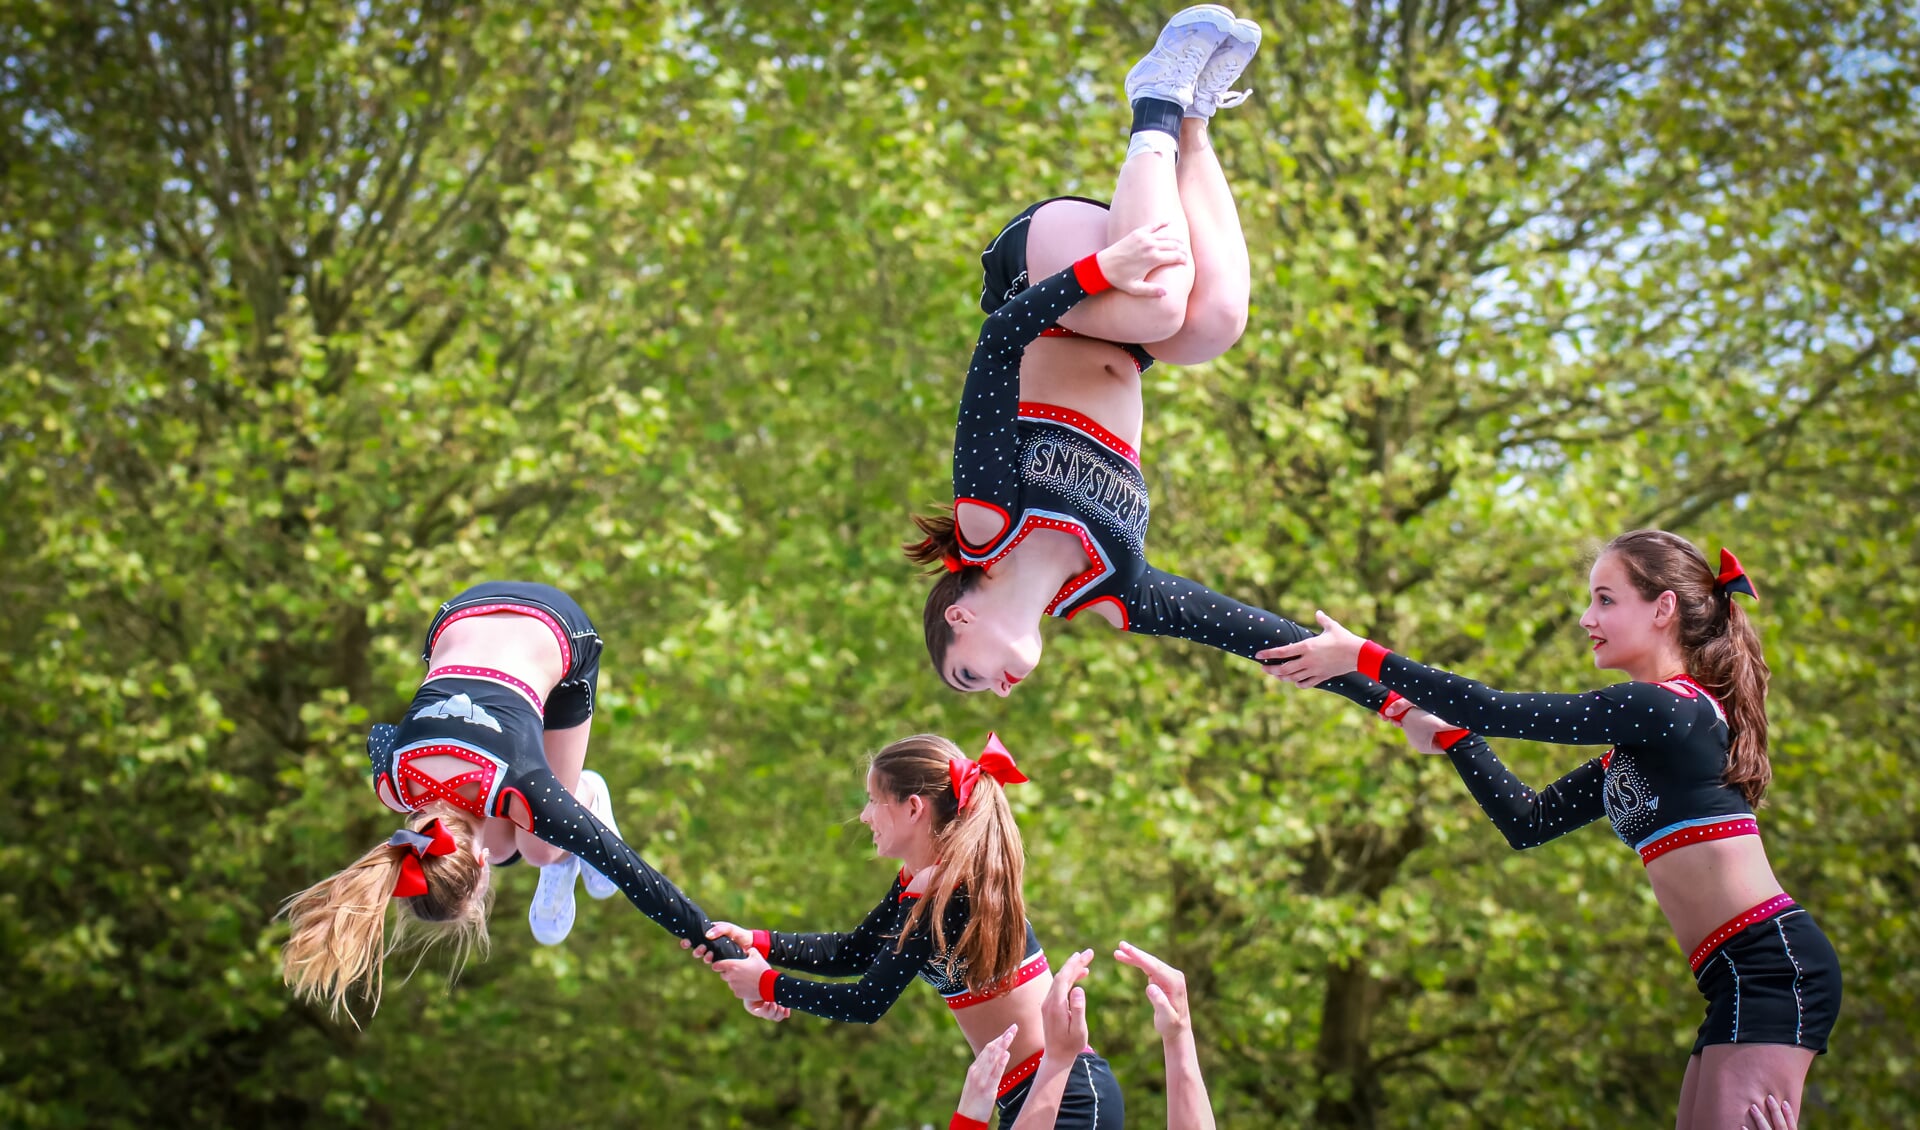 Cheerleadere van de Boxmeerse Partisans Athletics in actie. Foto: P. Heins